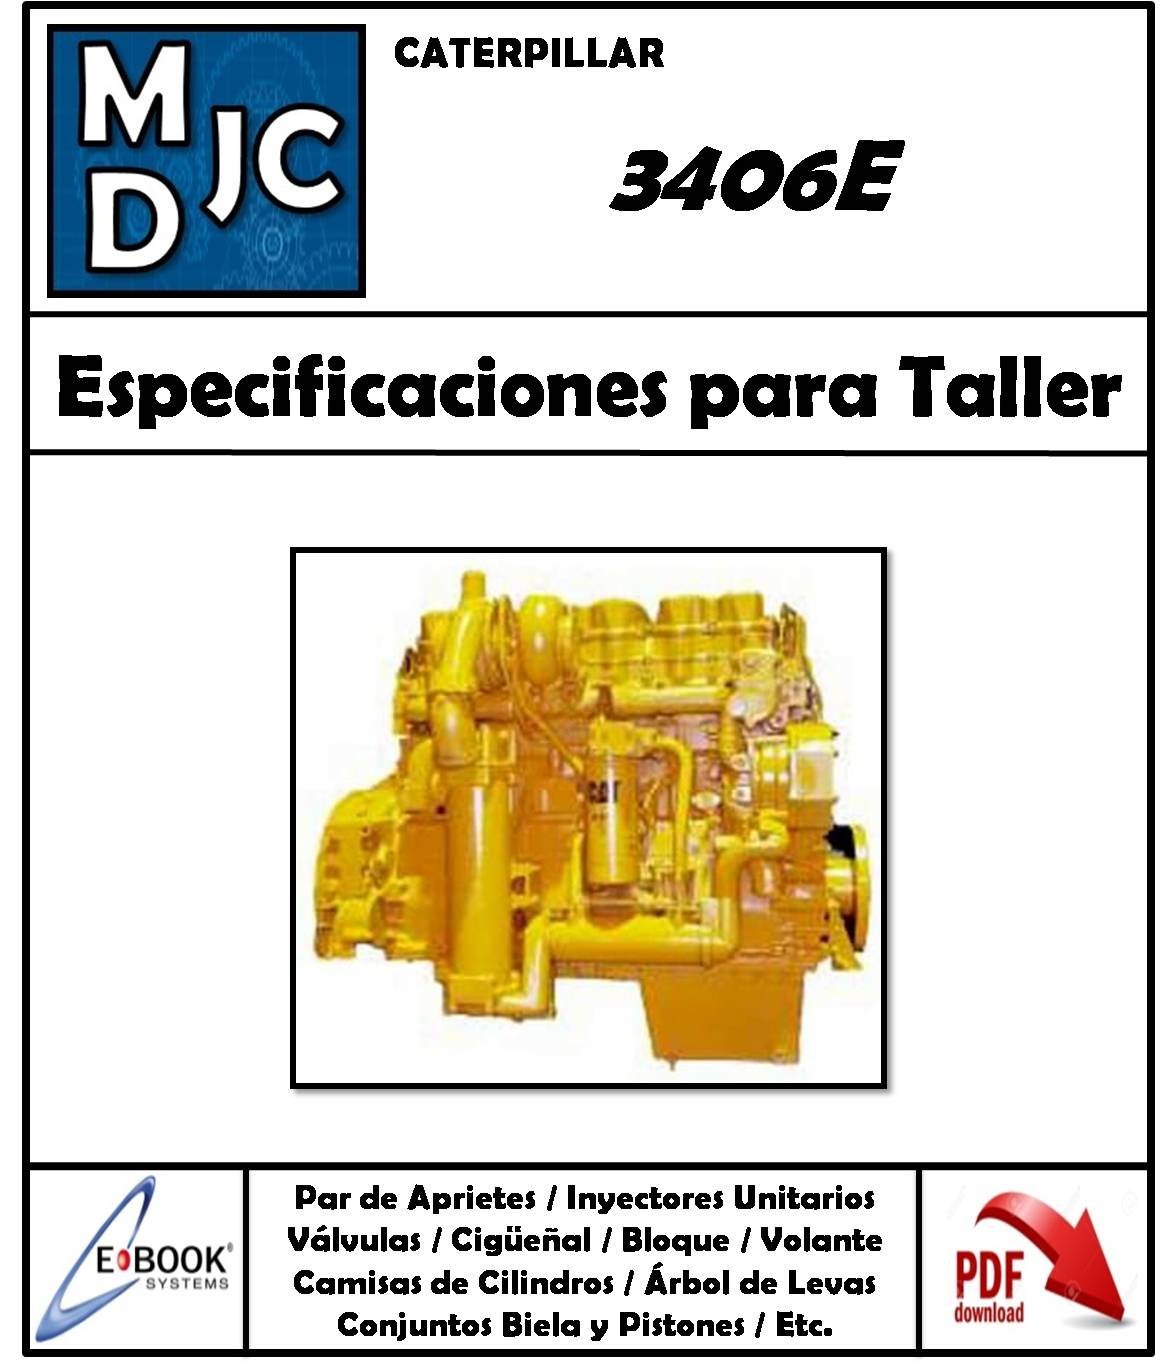 Manual de Especificaciones Técnicas para Taller Motor Caterpillar 3406E